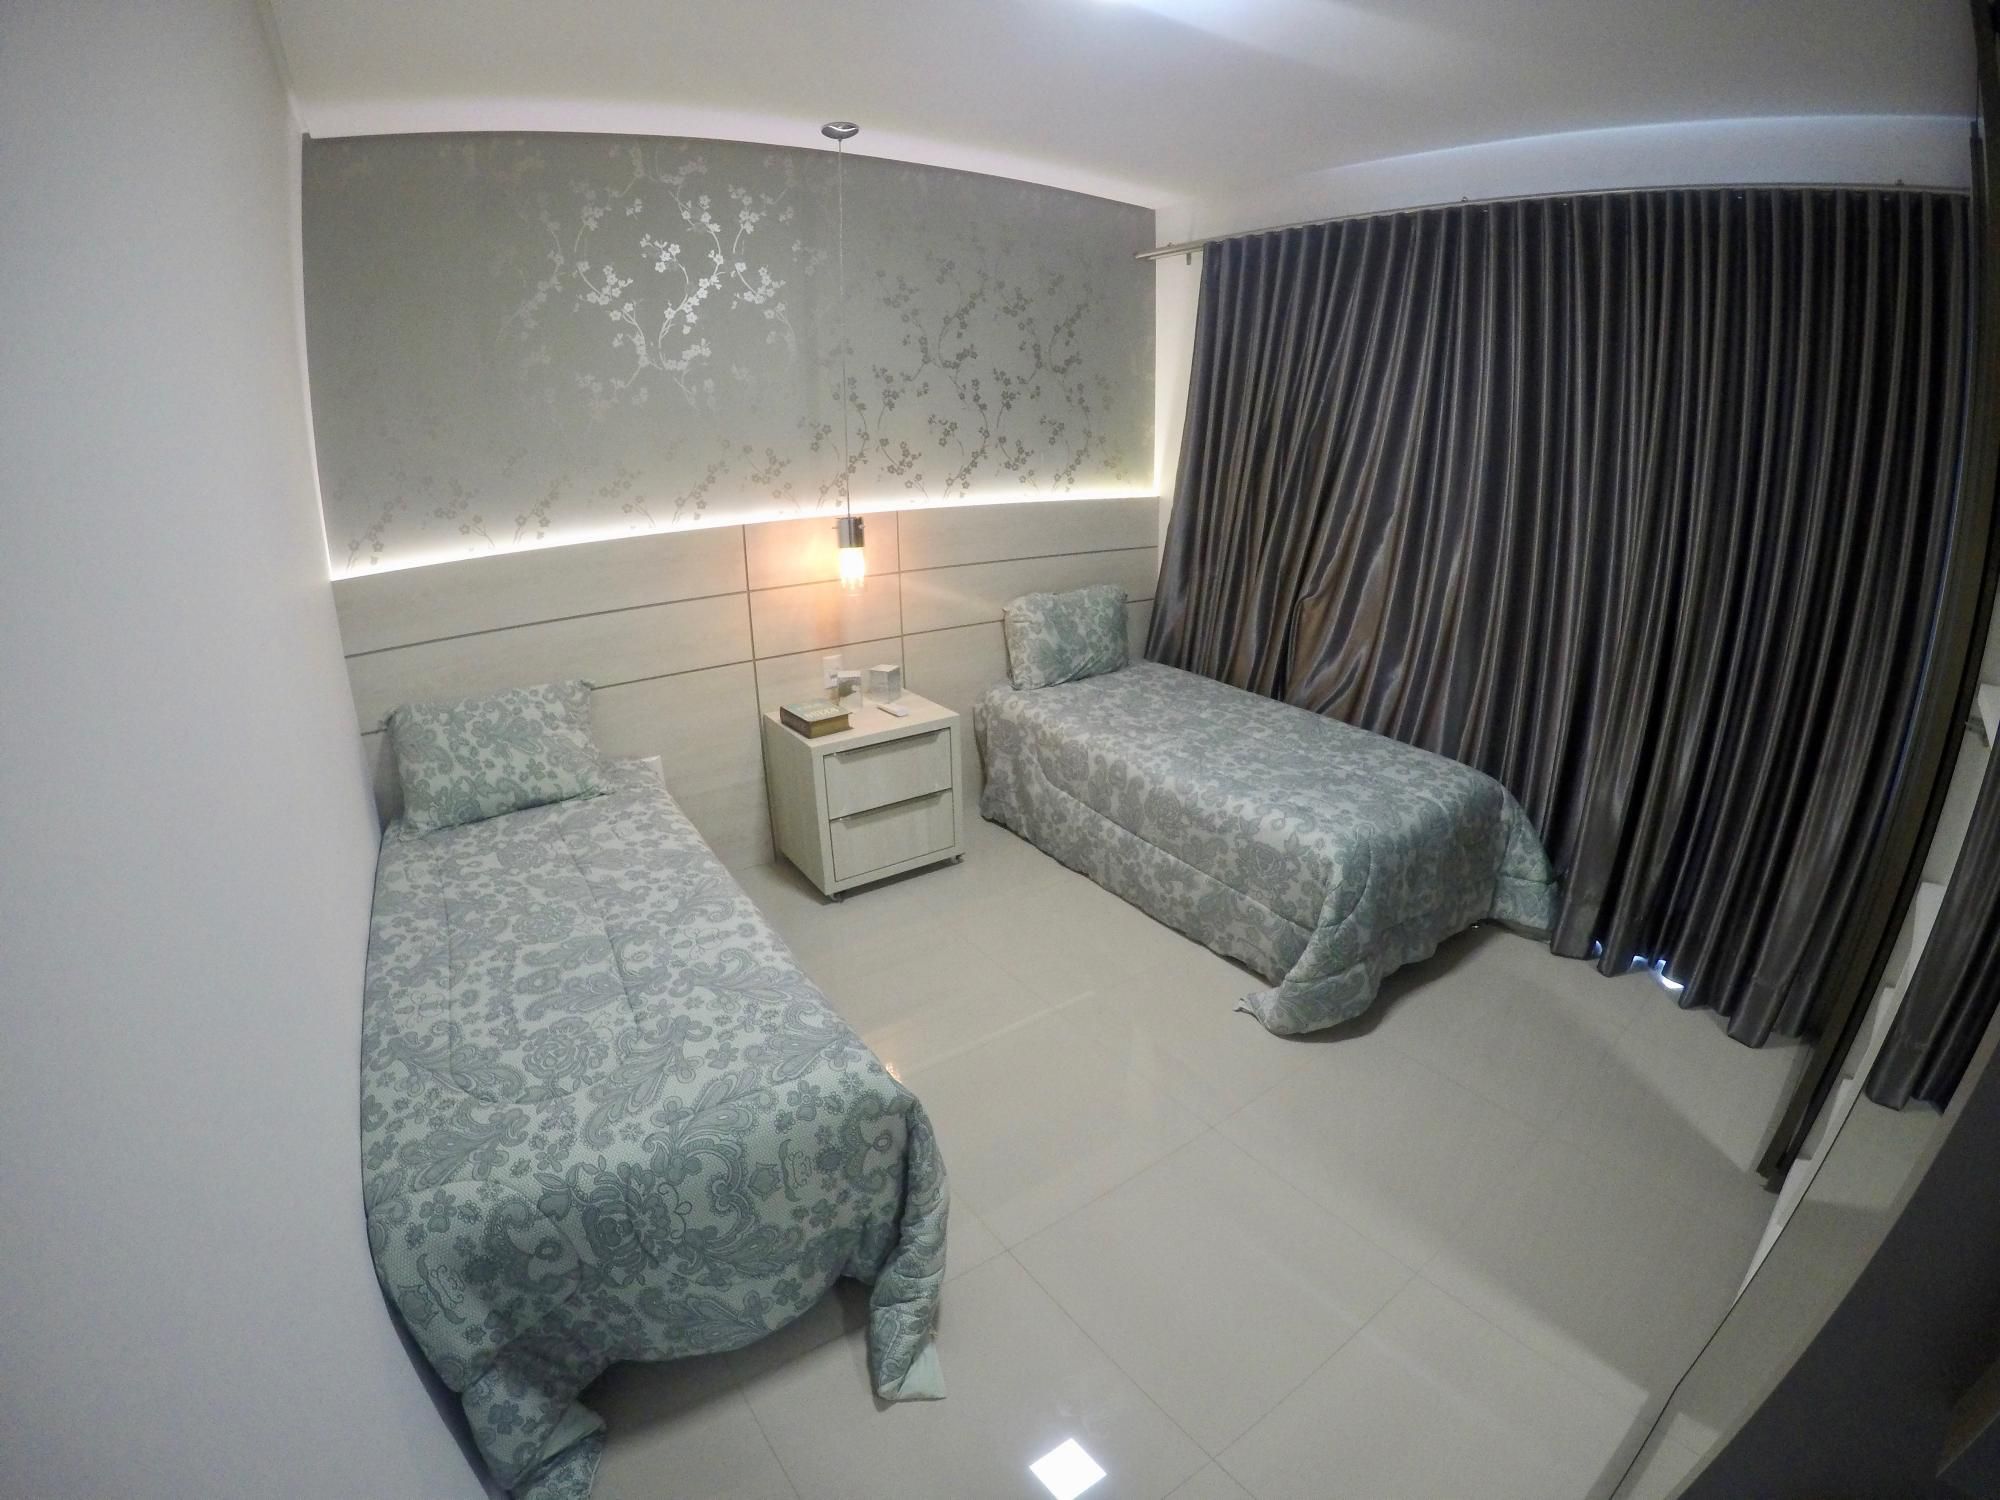 Cobertura com 2 Dormitórios para alugar, 145 m² por R$ 400,00